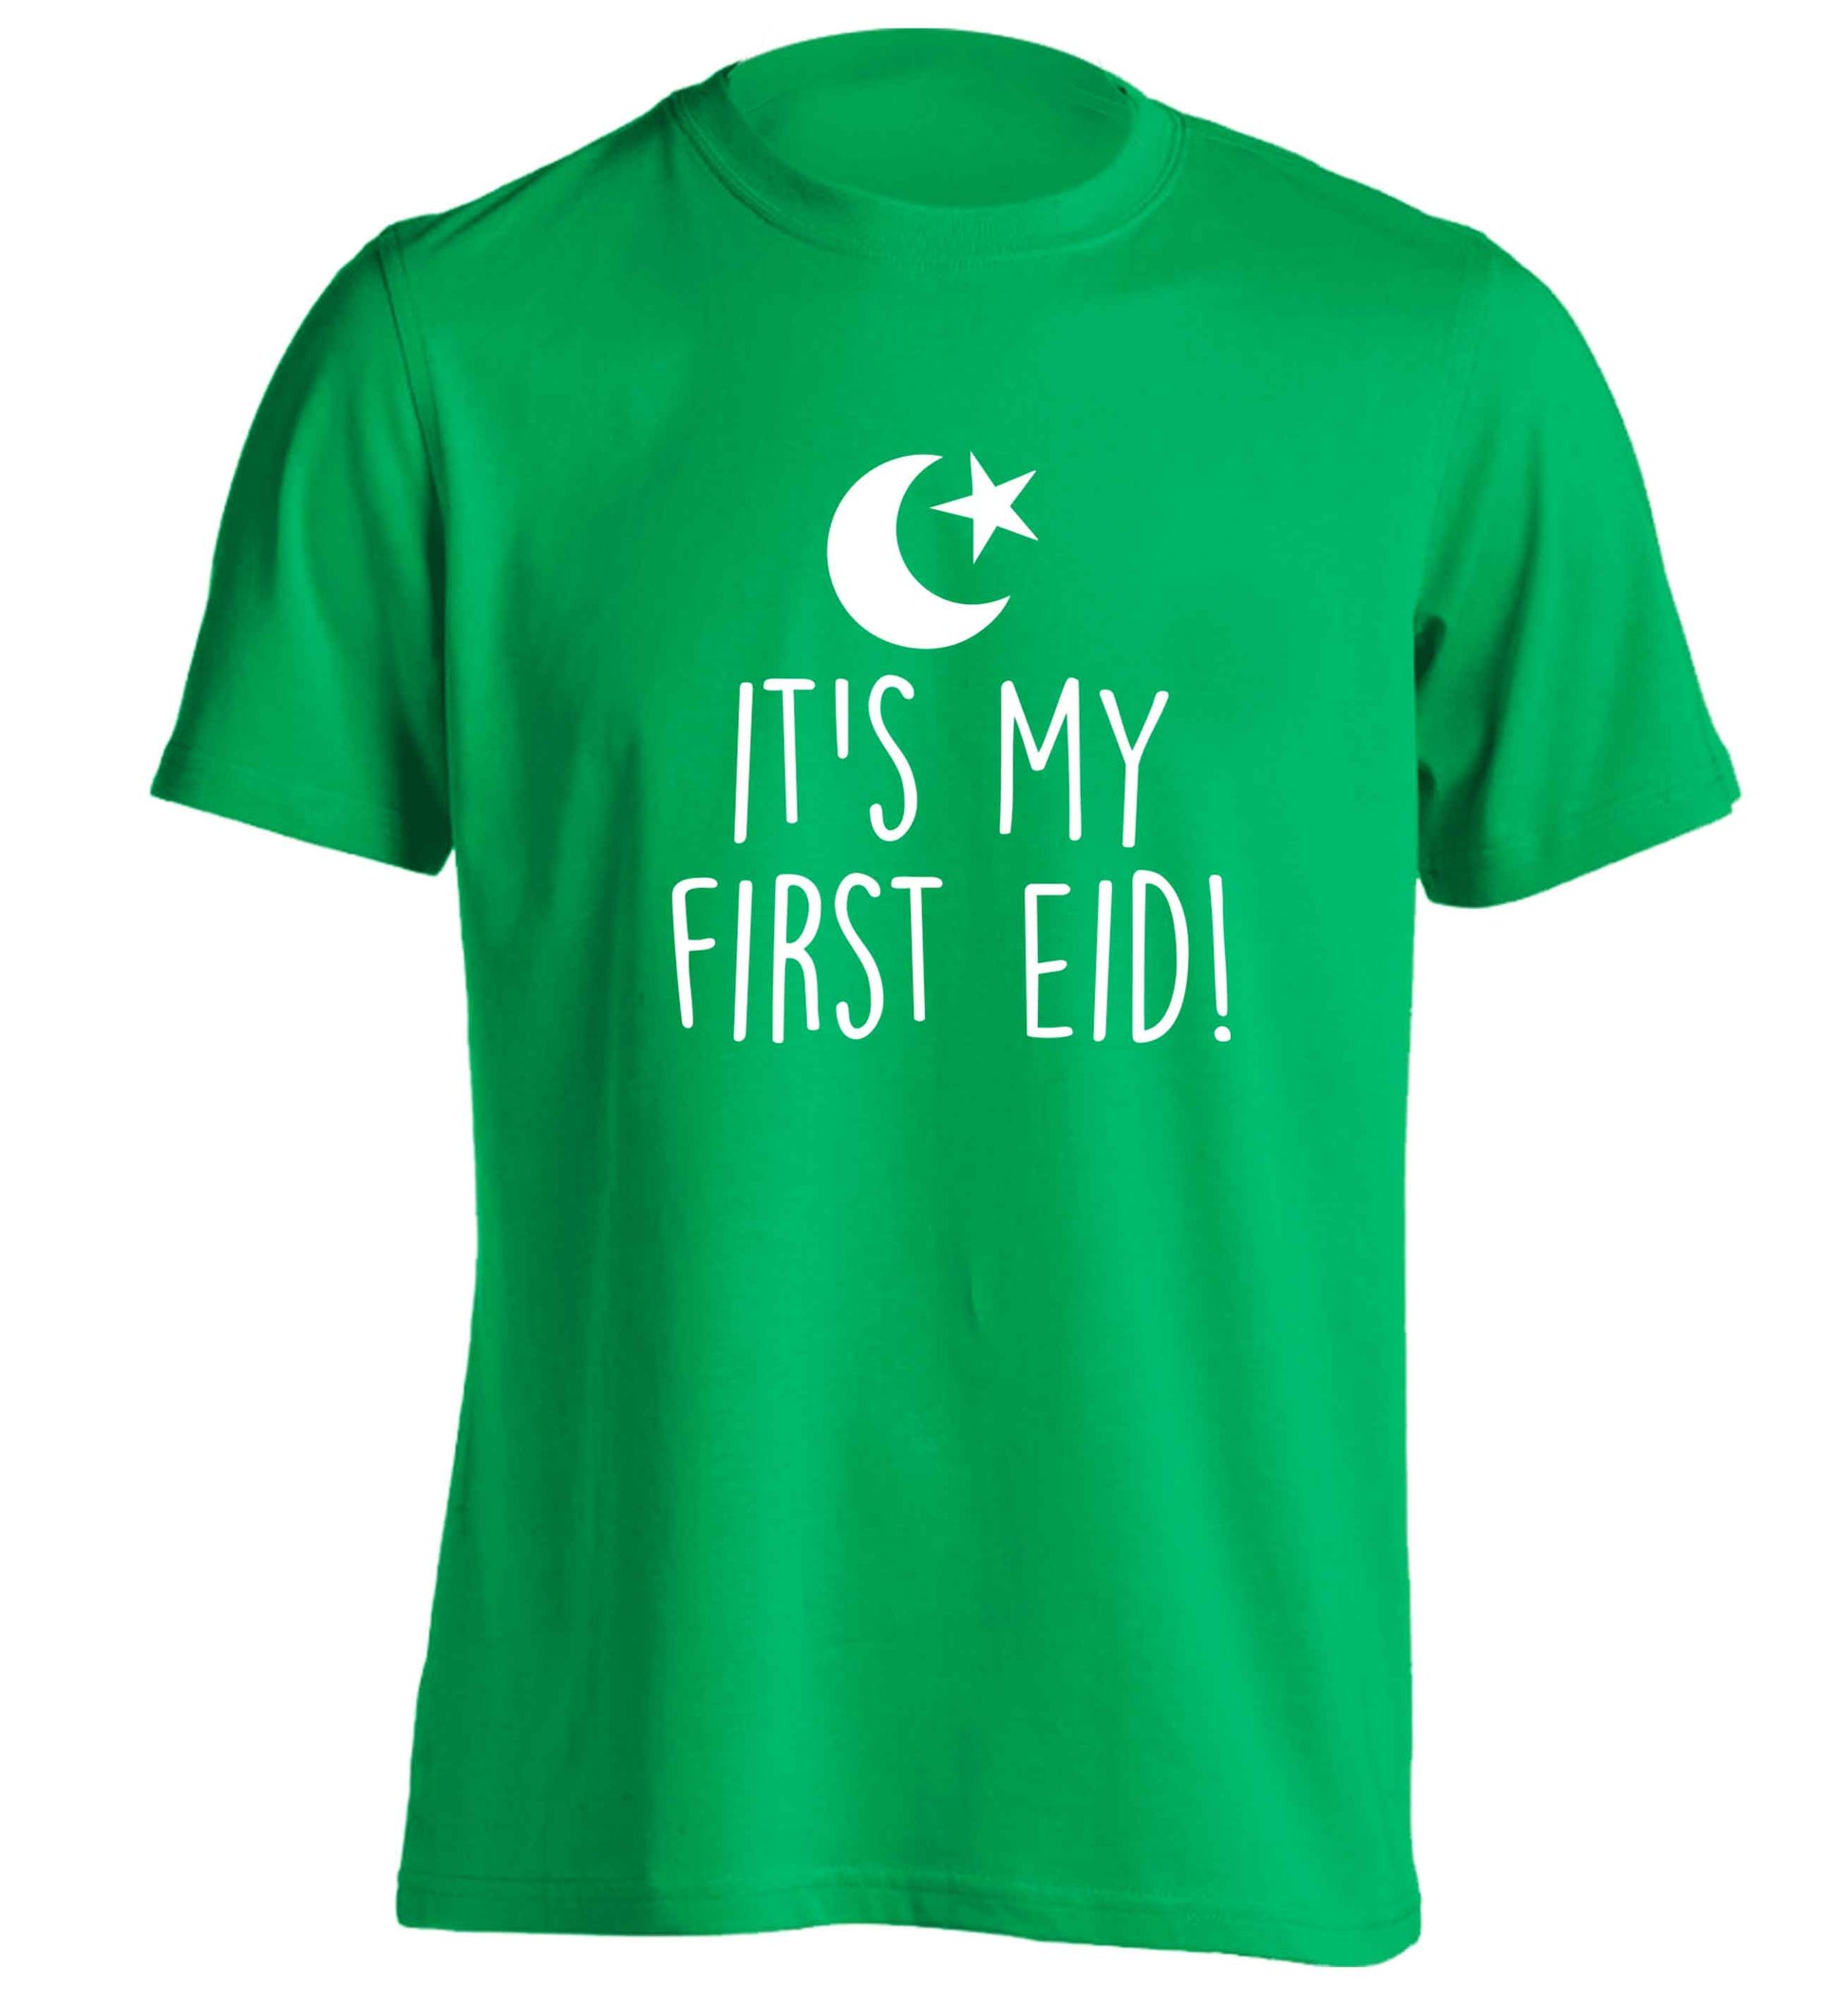 It's my first Eid adults unisex green Tshirt 2XL